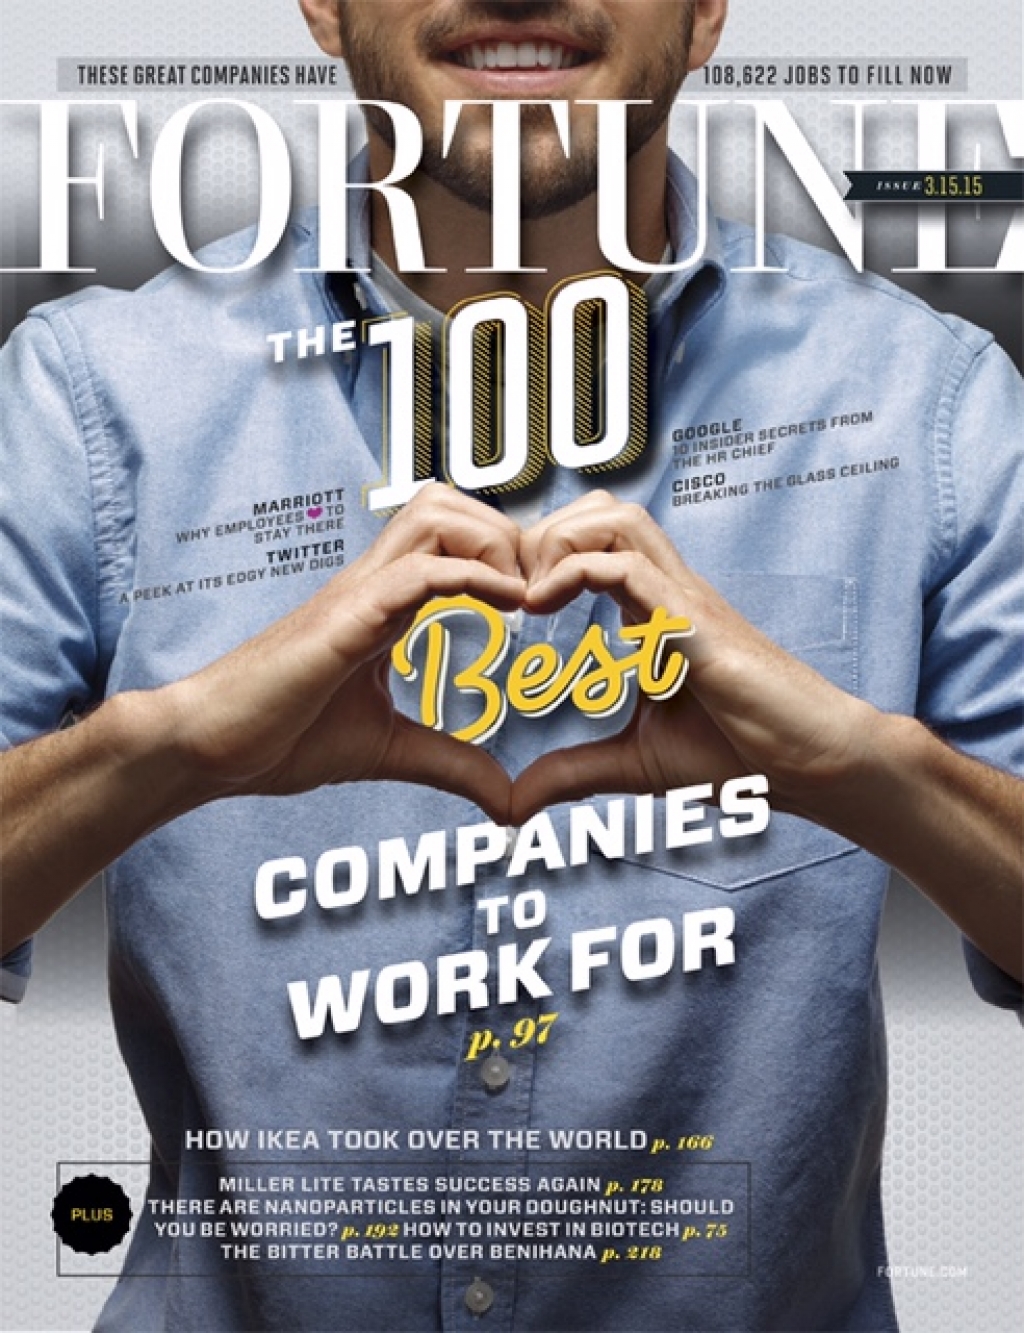 FORTUNE Magazine March 15, 2015 Cover